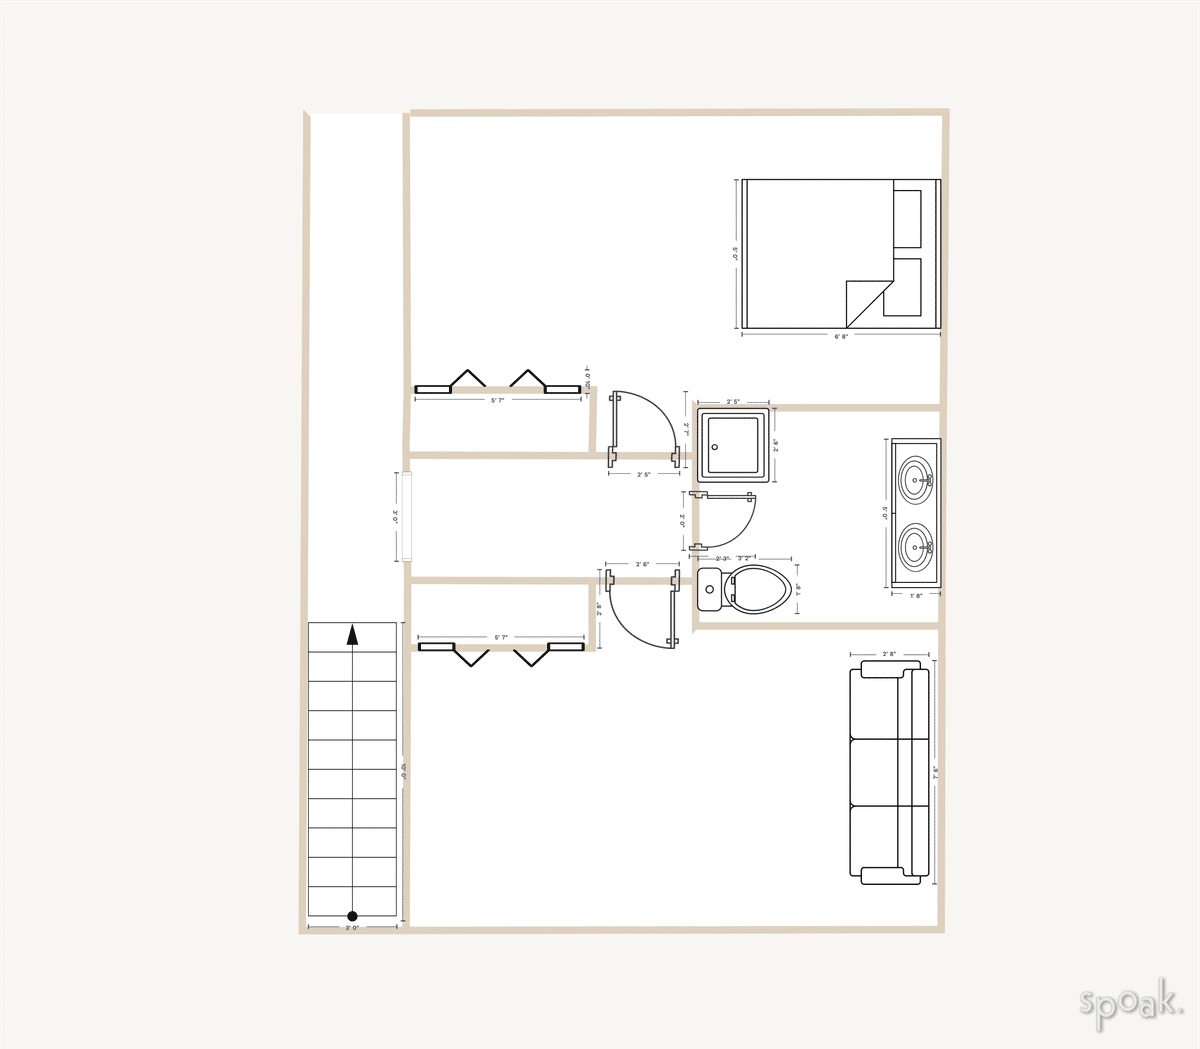 Bedroom + Bathroom Floor Plan designed by Rachel Fernandez